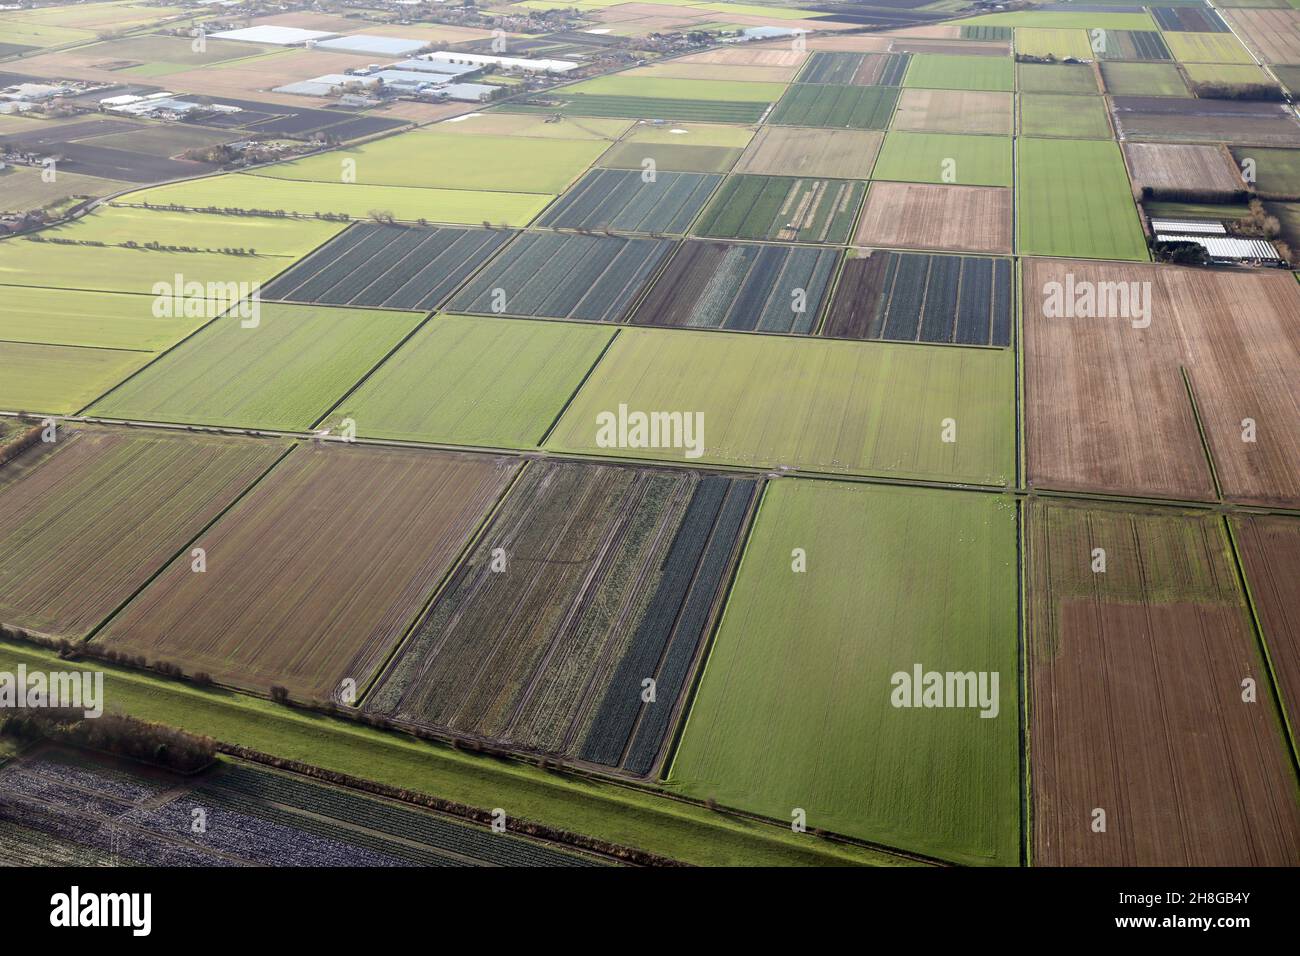 Vista aérea de los campos hortícolas en la zona de Hesketh Bank de Lancashire, al oeste de Preston y al noreste de Blackpool, Lancashire Foto de stock